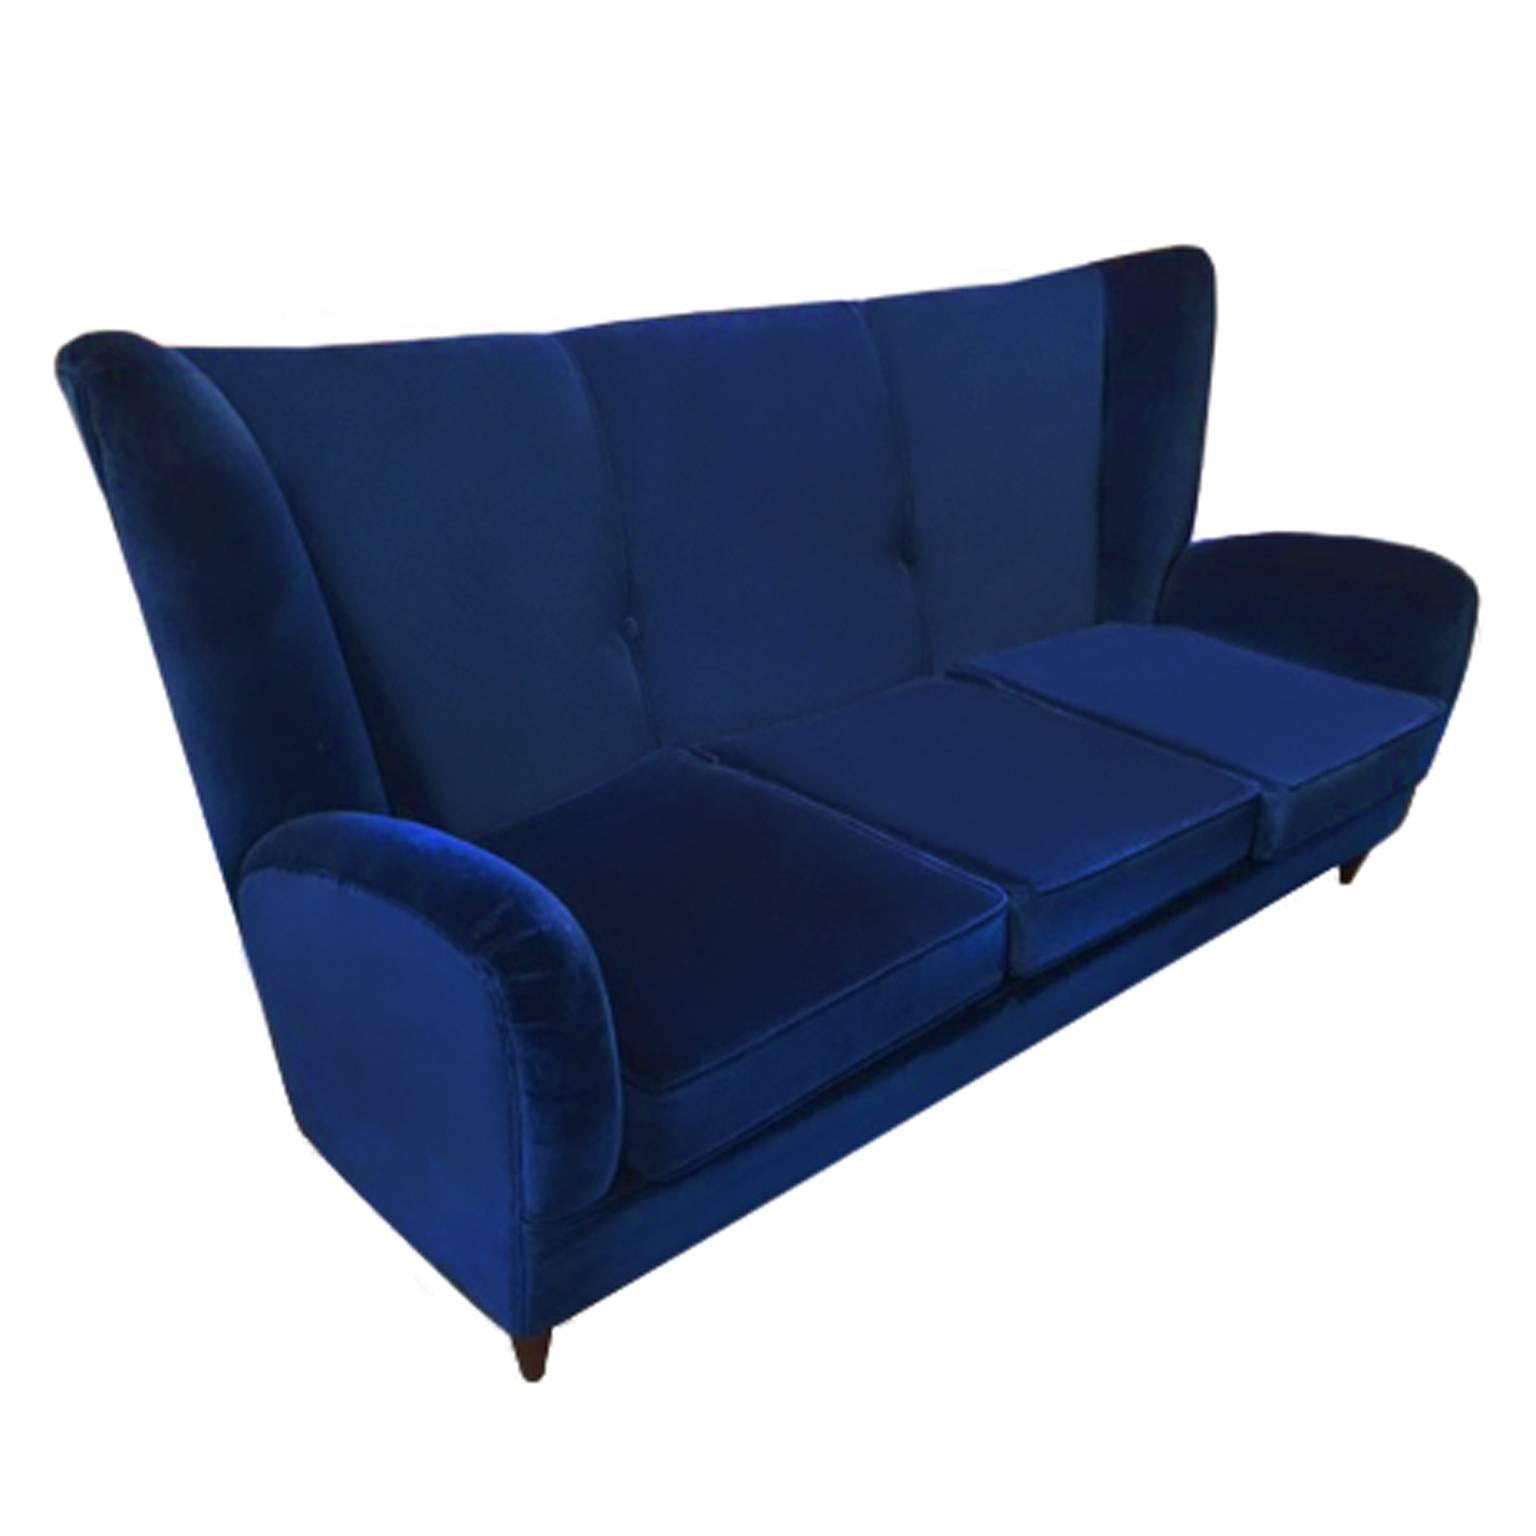 1960s Italian Sofa in Navy Blue Velvet by Paolo Buffa